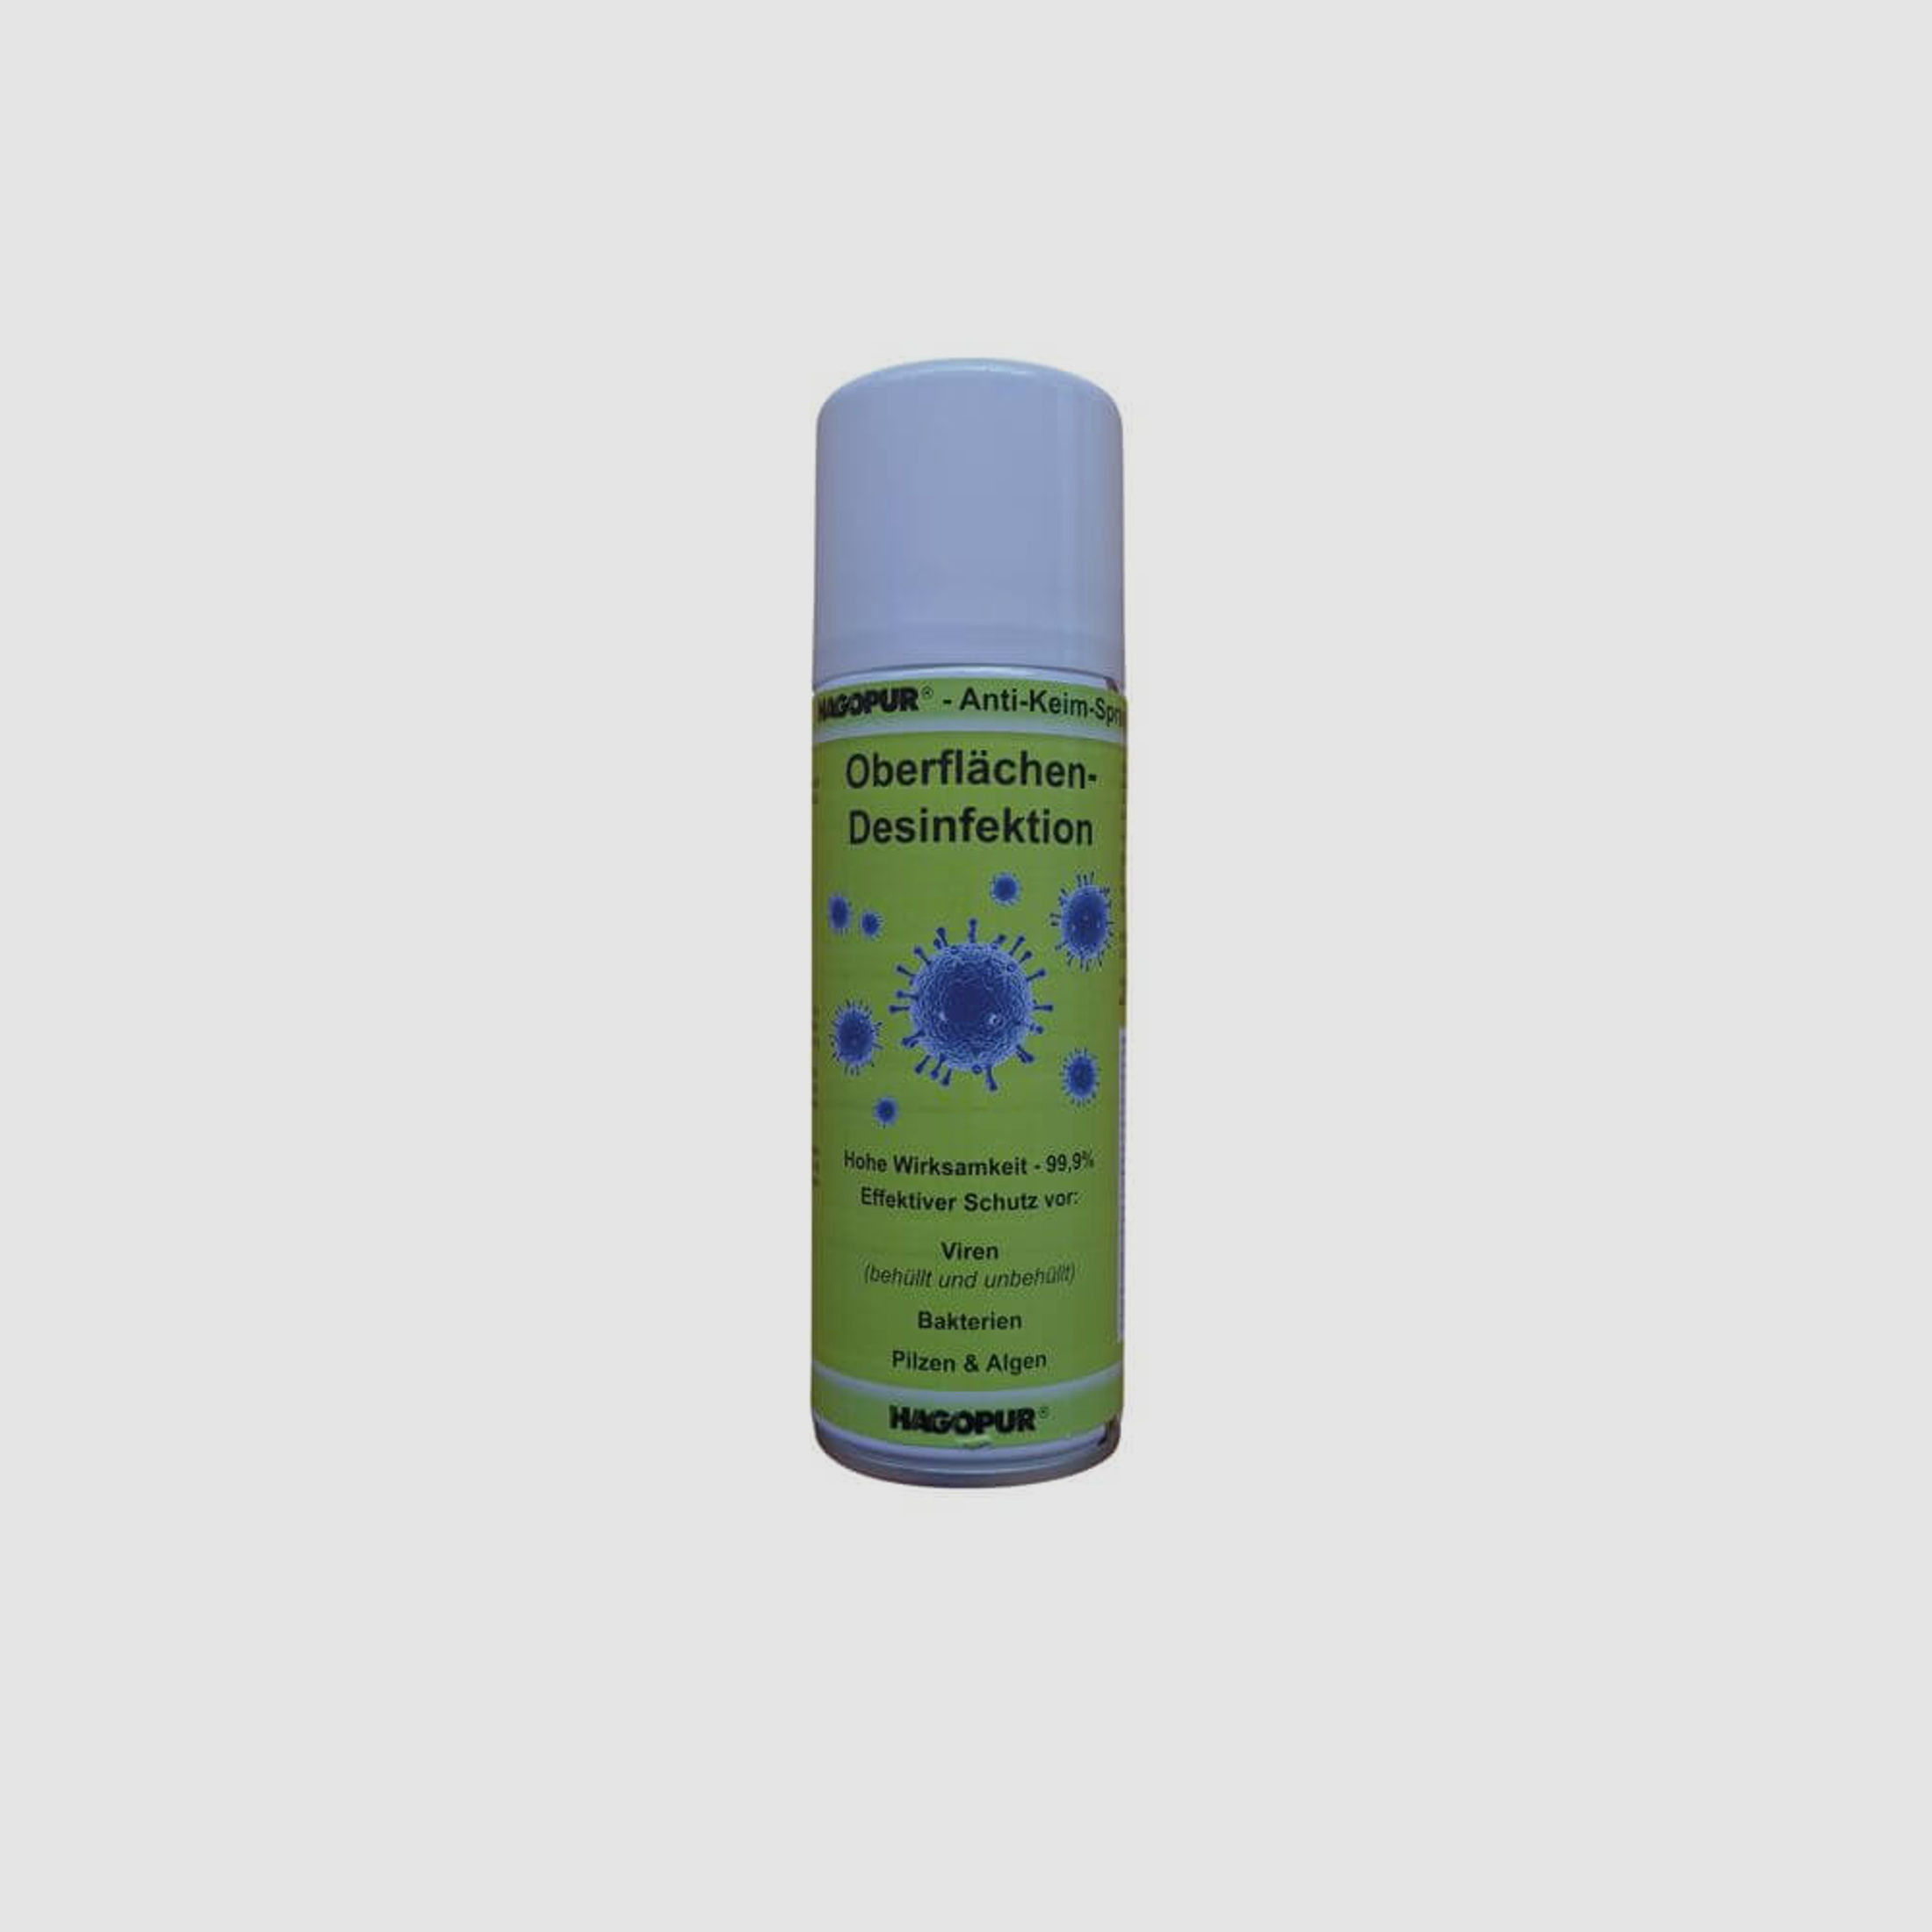 Anti-Kein-Spray – Oberflächen-Desinfektion